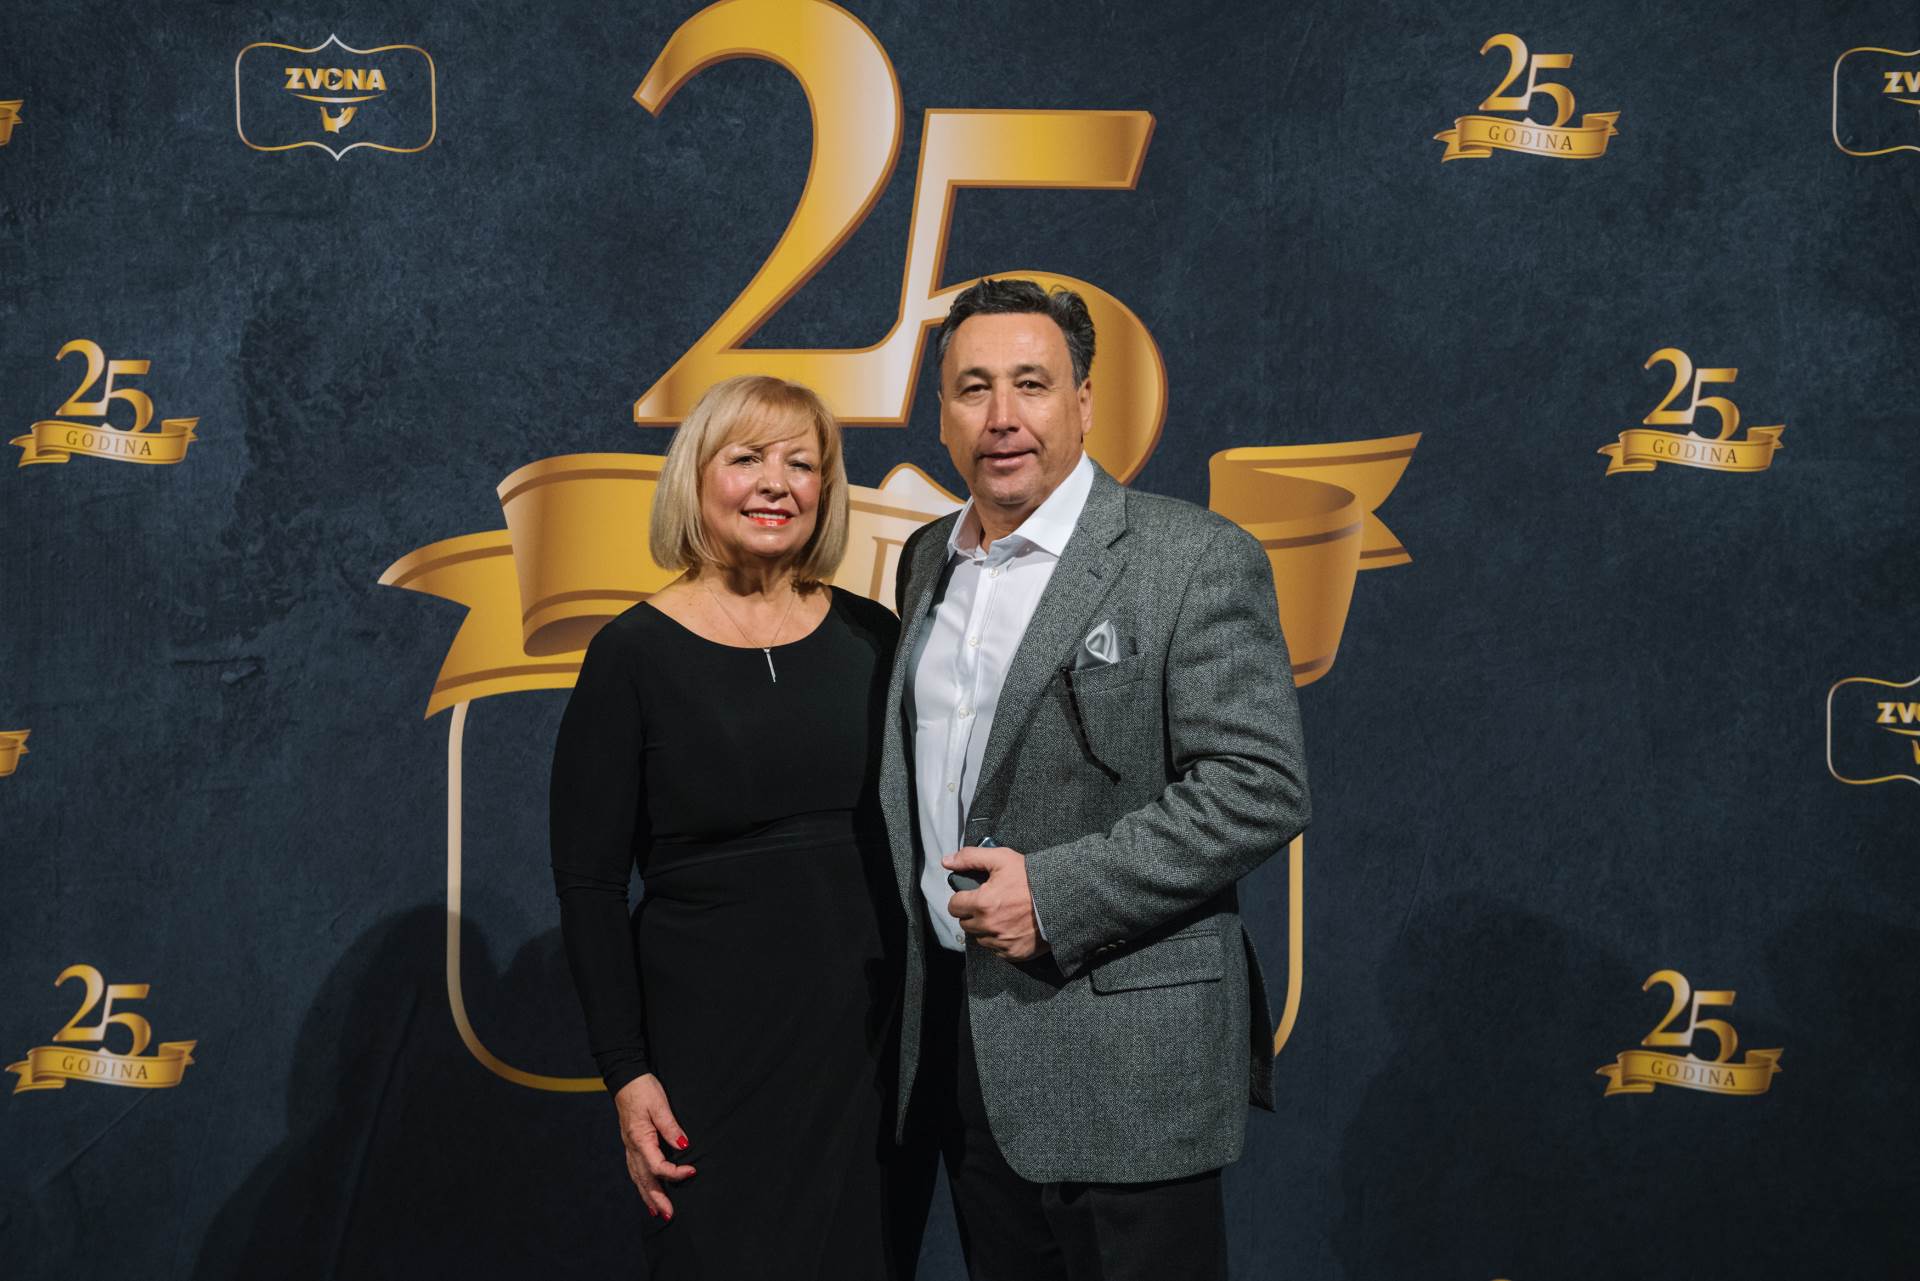 25 godina Zvona cateringa:  Obiteljska priča o ljubavi i hrani